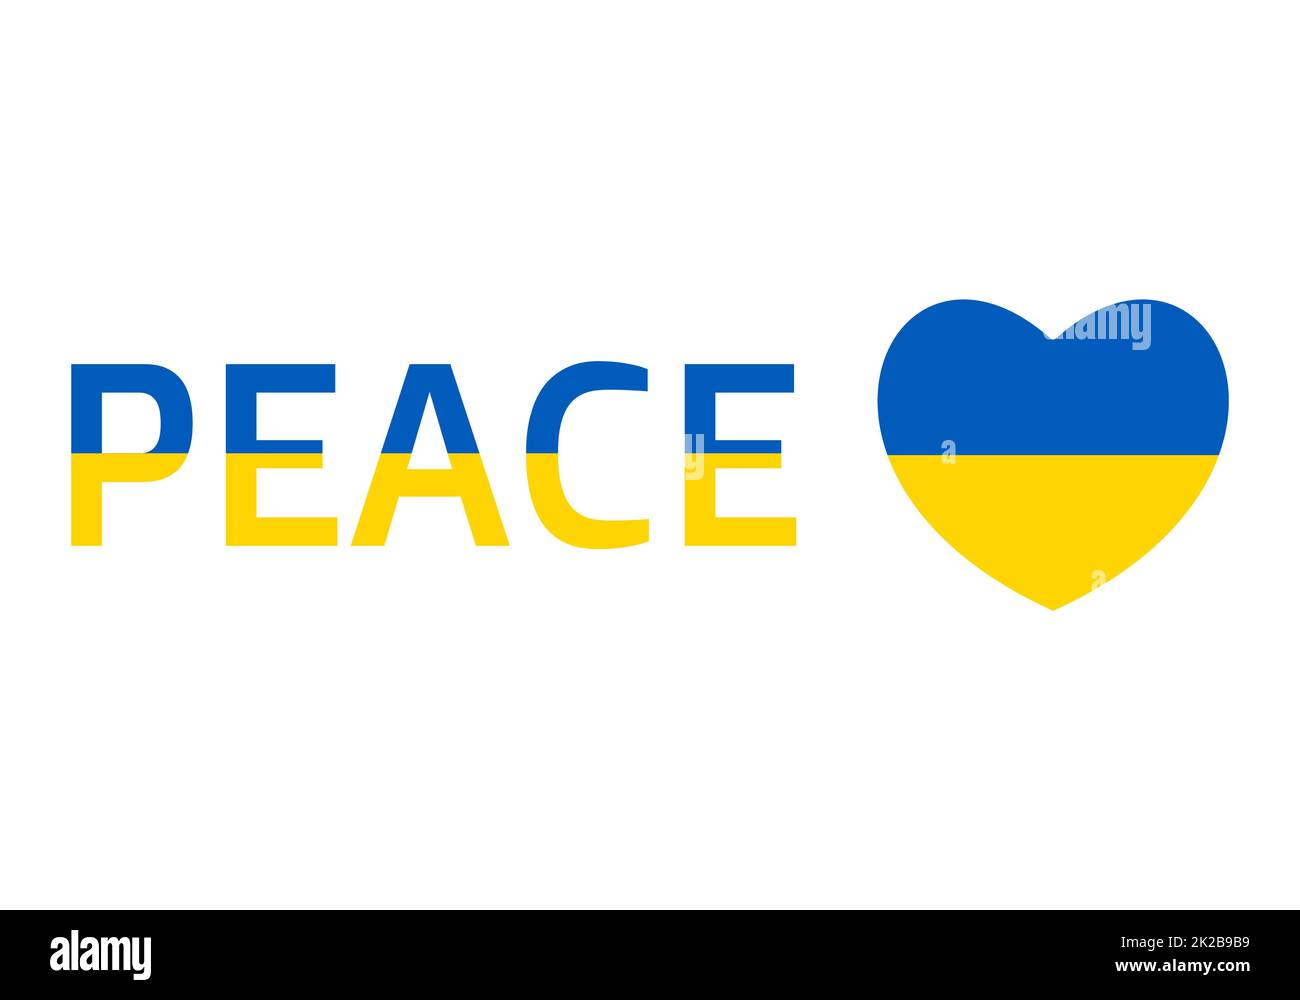 Icona della bandiera Ucraina a forma di cuore e testo di pace. Astratta bandiera patriottica ucraina con simbolo d'amore. Idea concettuale - con l'Ucraina nel suo cuore. Sostegno al paese durante l'occupazione. Foto Stock